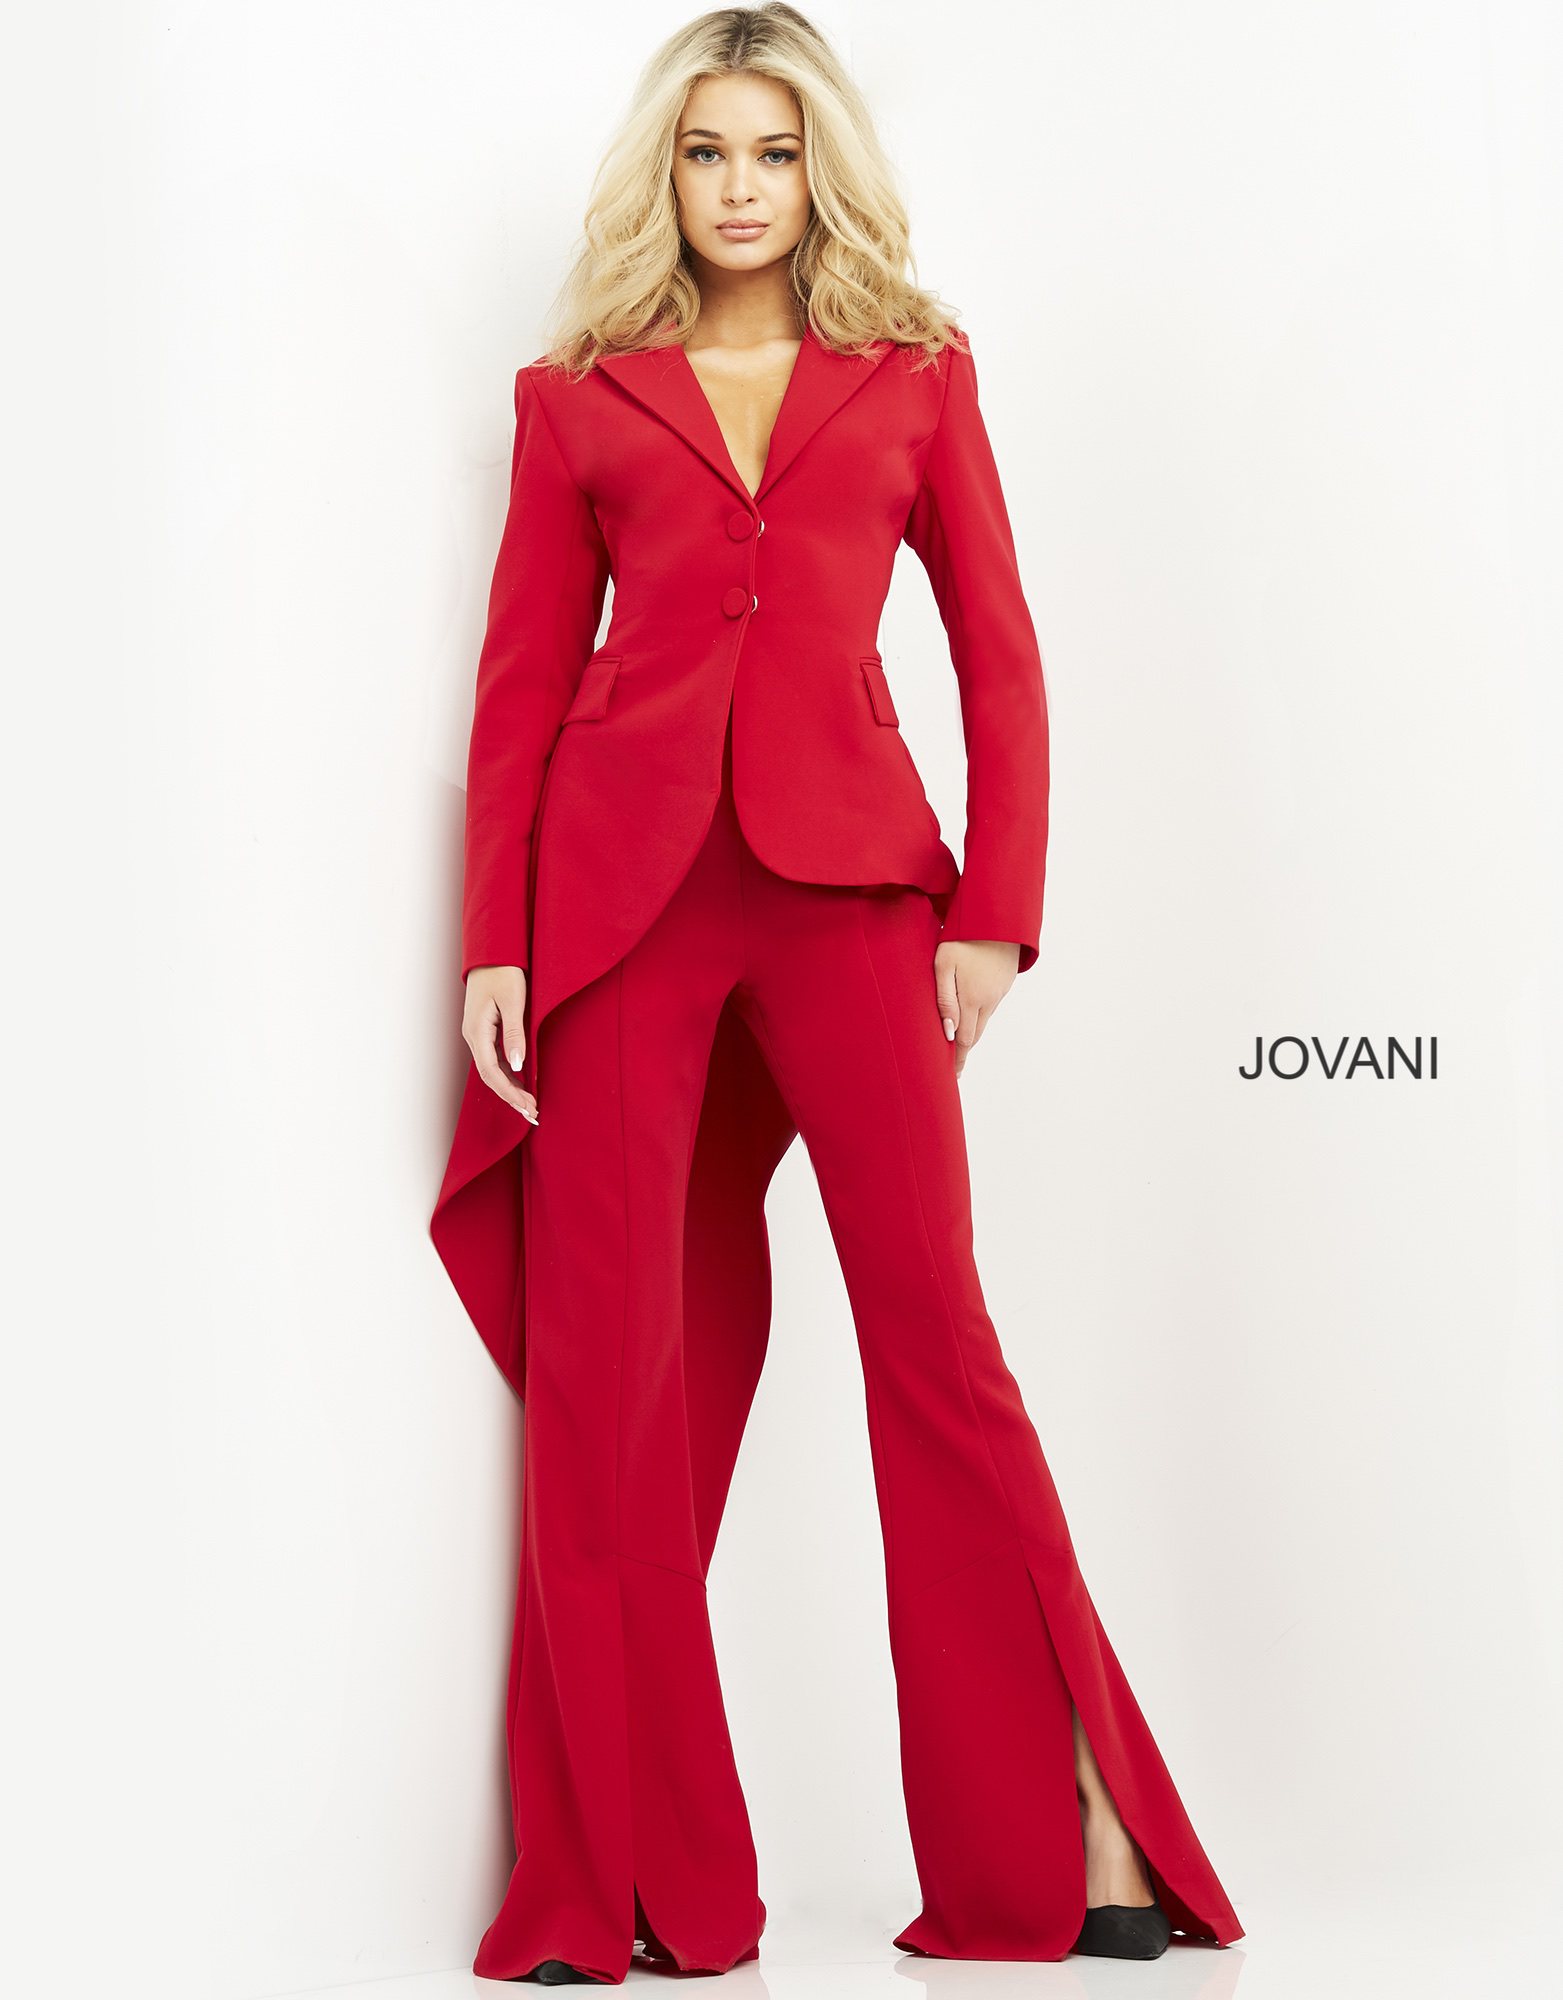 Jovani 07209 Red Asymmetric Hem Two Piece Pant Suit